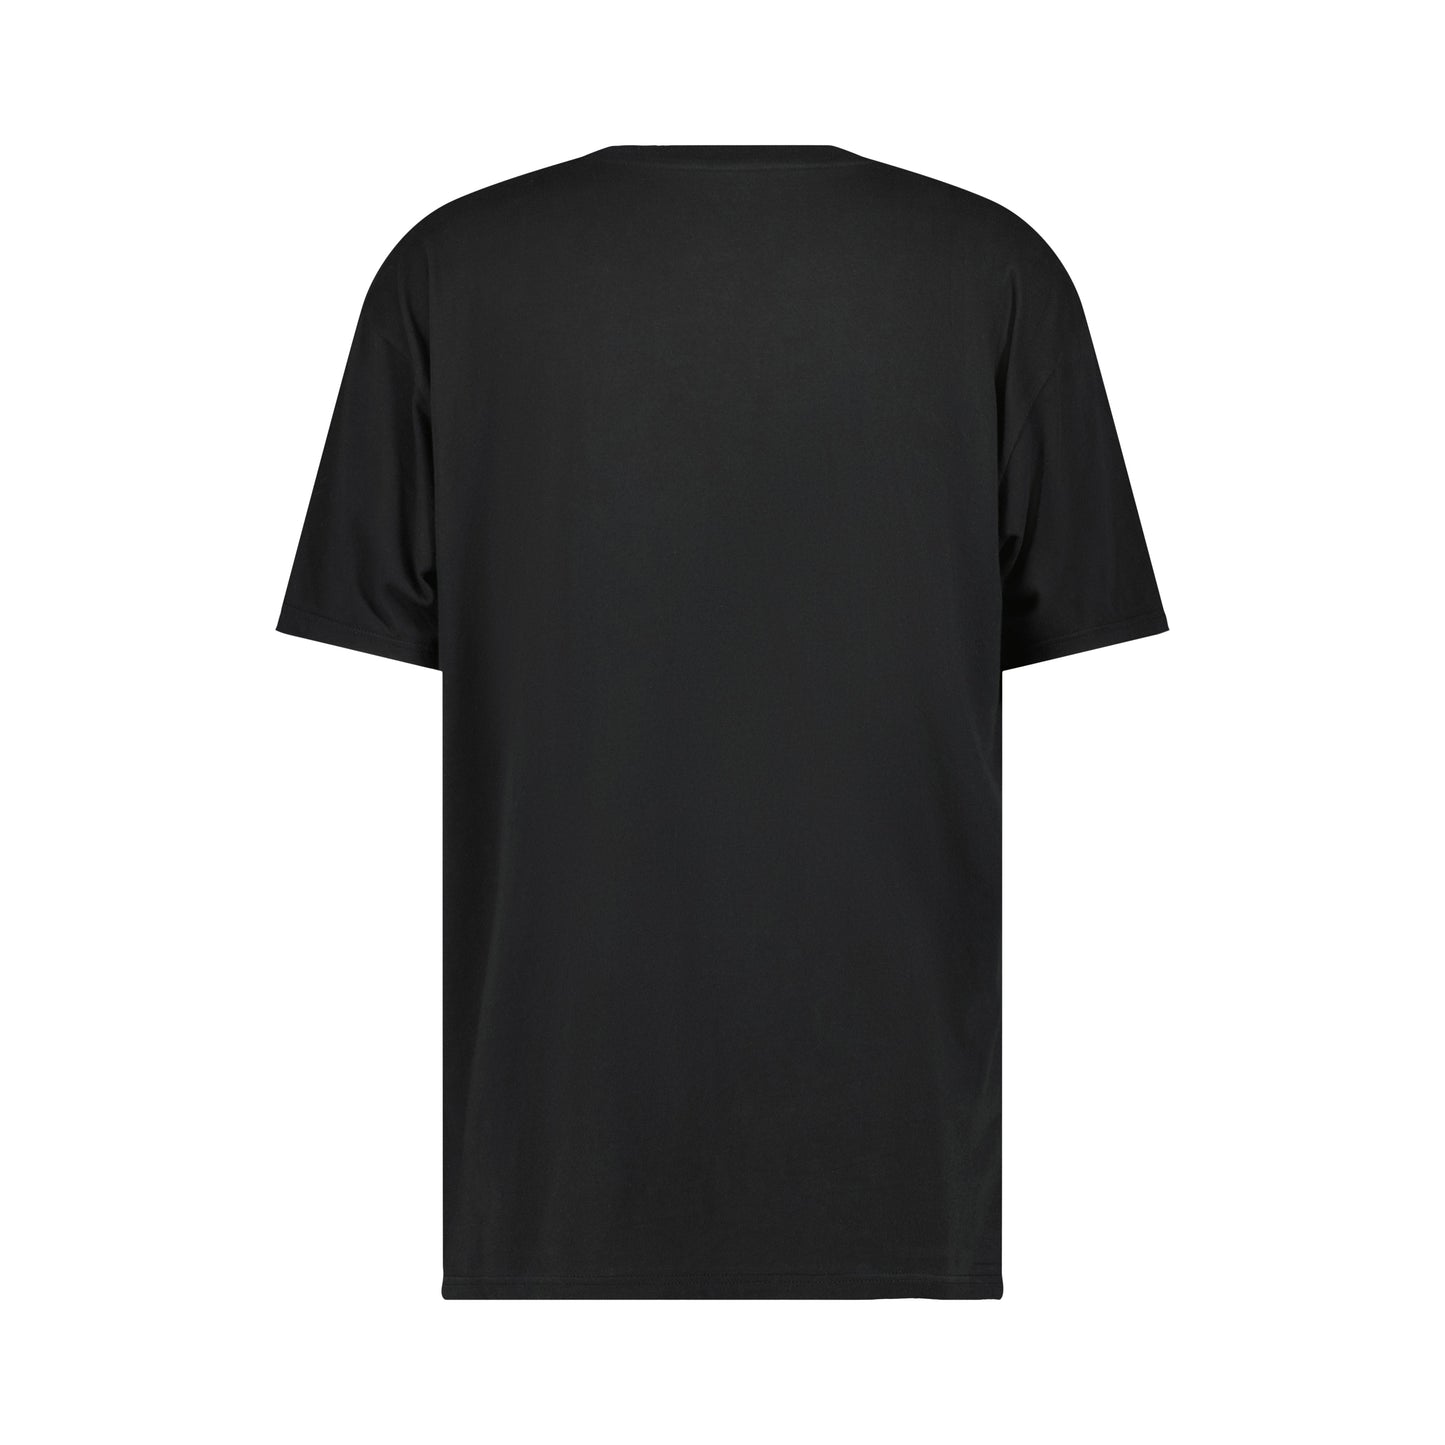 Peter Jersey Cotton T Shirt Black